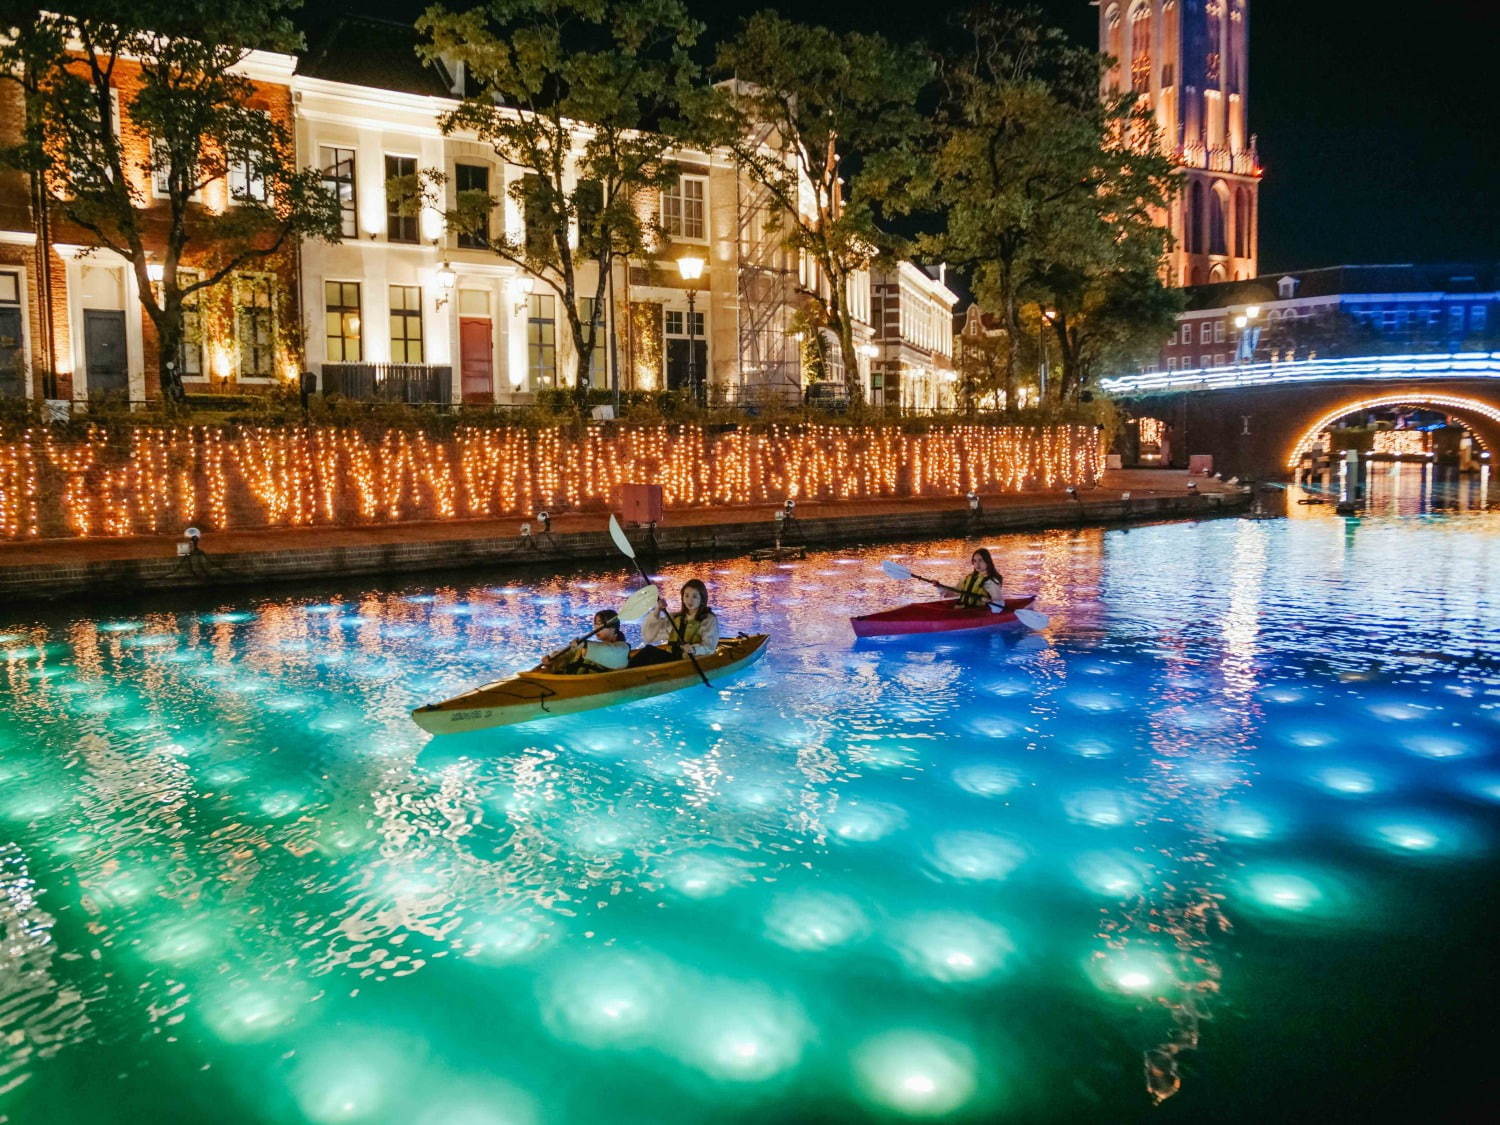 ハウステンボス、幻想的な光のアートで運河を彩る「カナルアートフェスティバル」1,300万球イルミも｜写真7